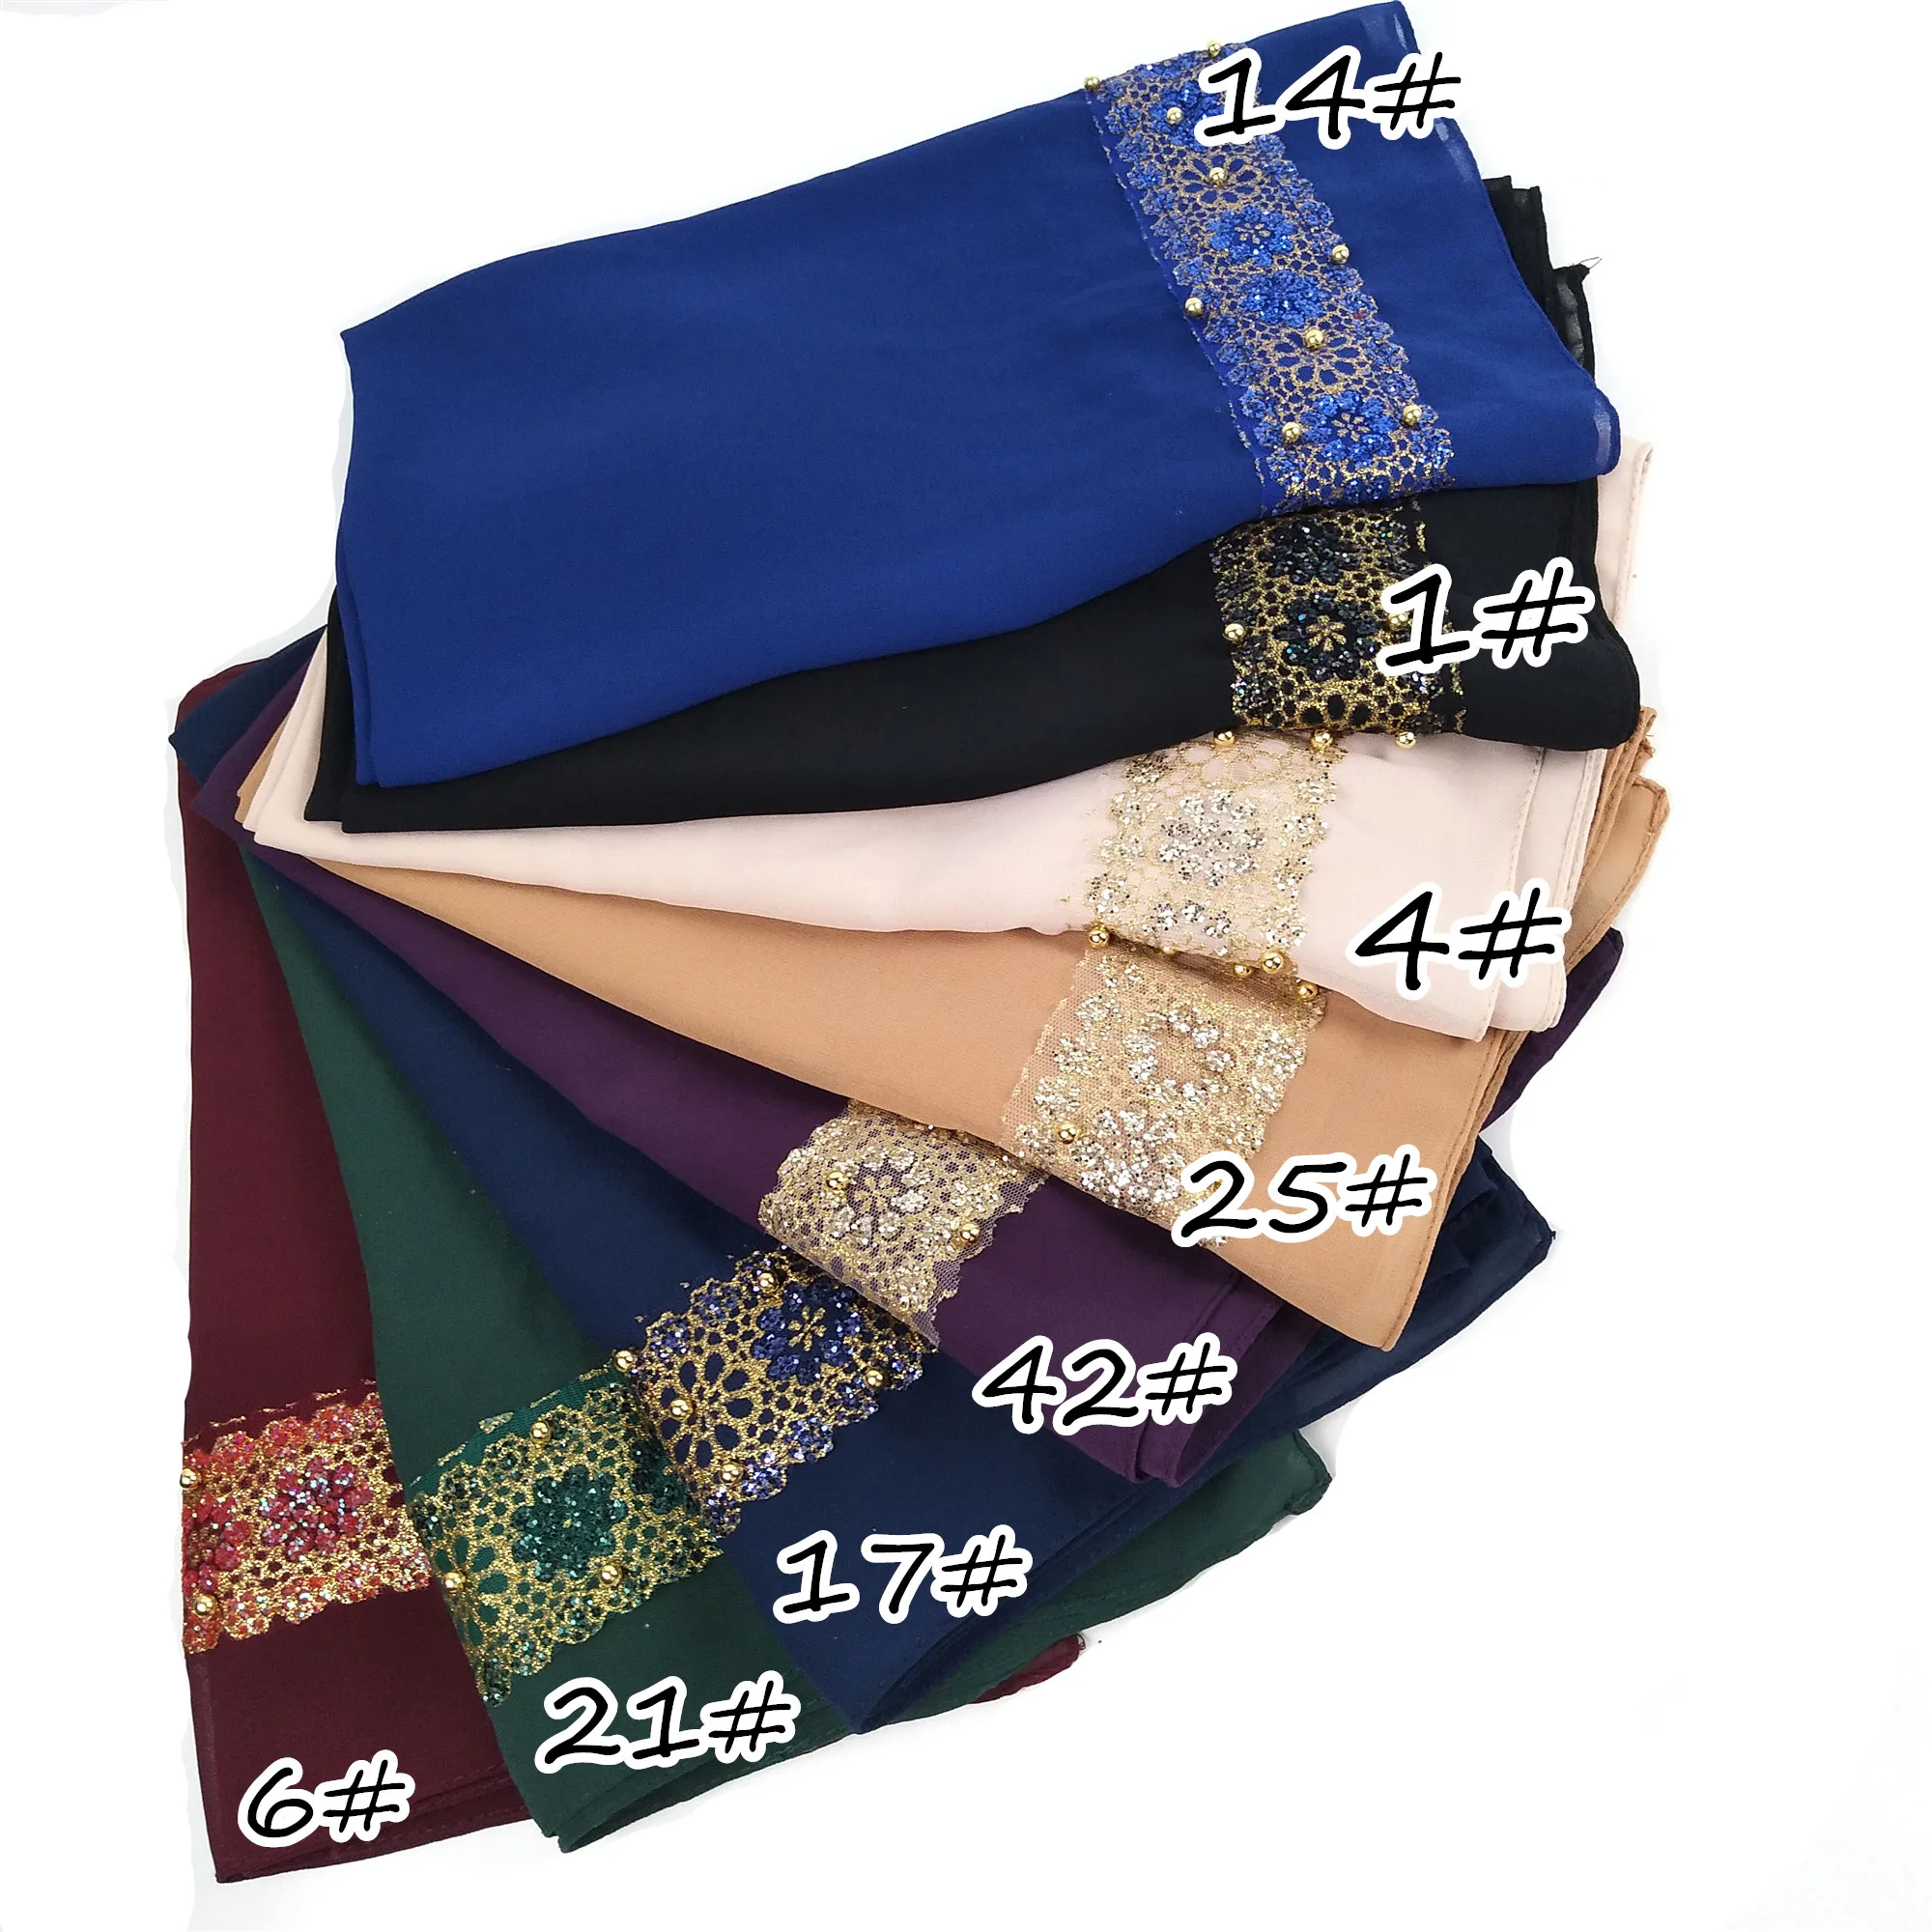 H4 высокое качество кружева жемчужный пузырь хиджаб Леди шали шарфы для женщин 180*75 см можно выбрать цвета